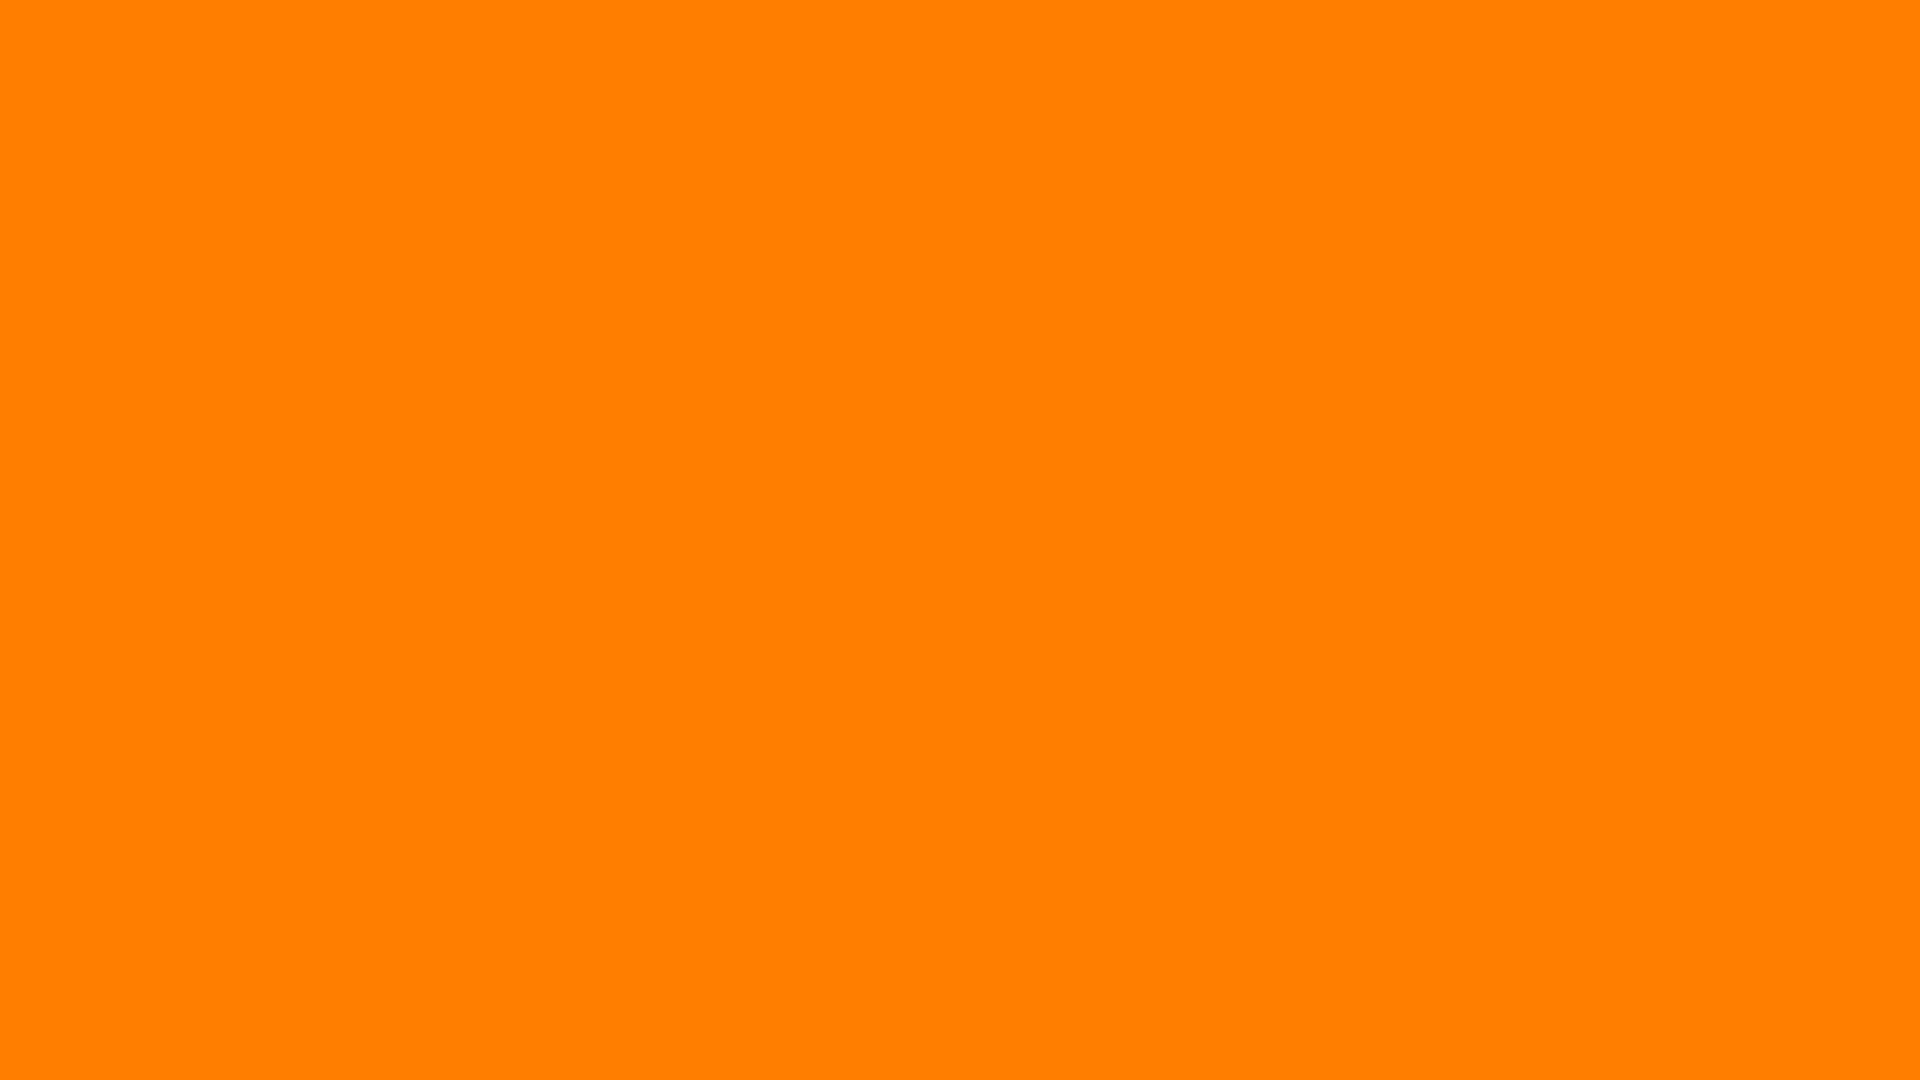 Tổng hợp Background orange colour photos đẹp nhất, miễn phí tải về